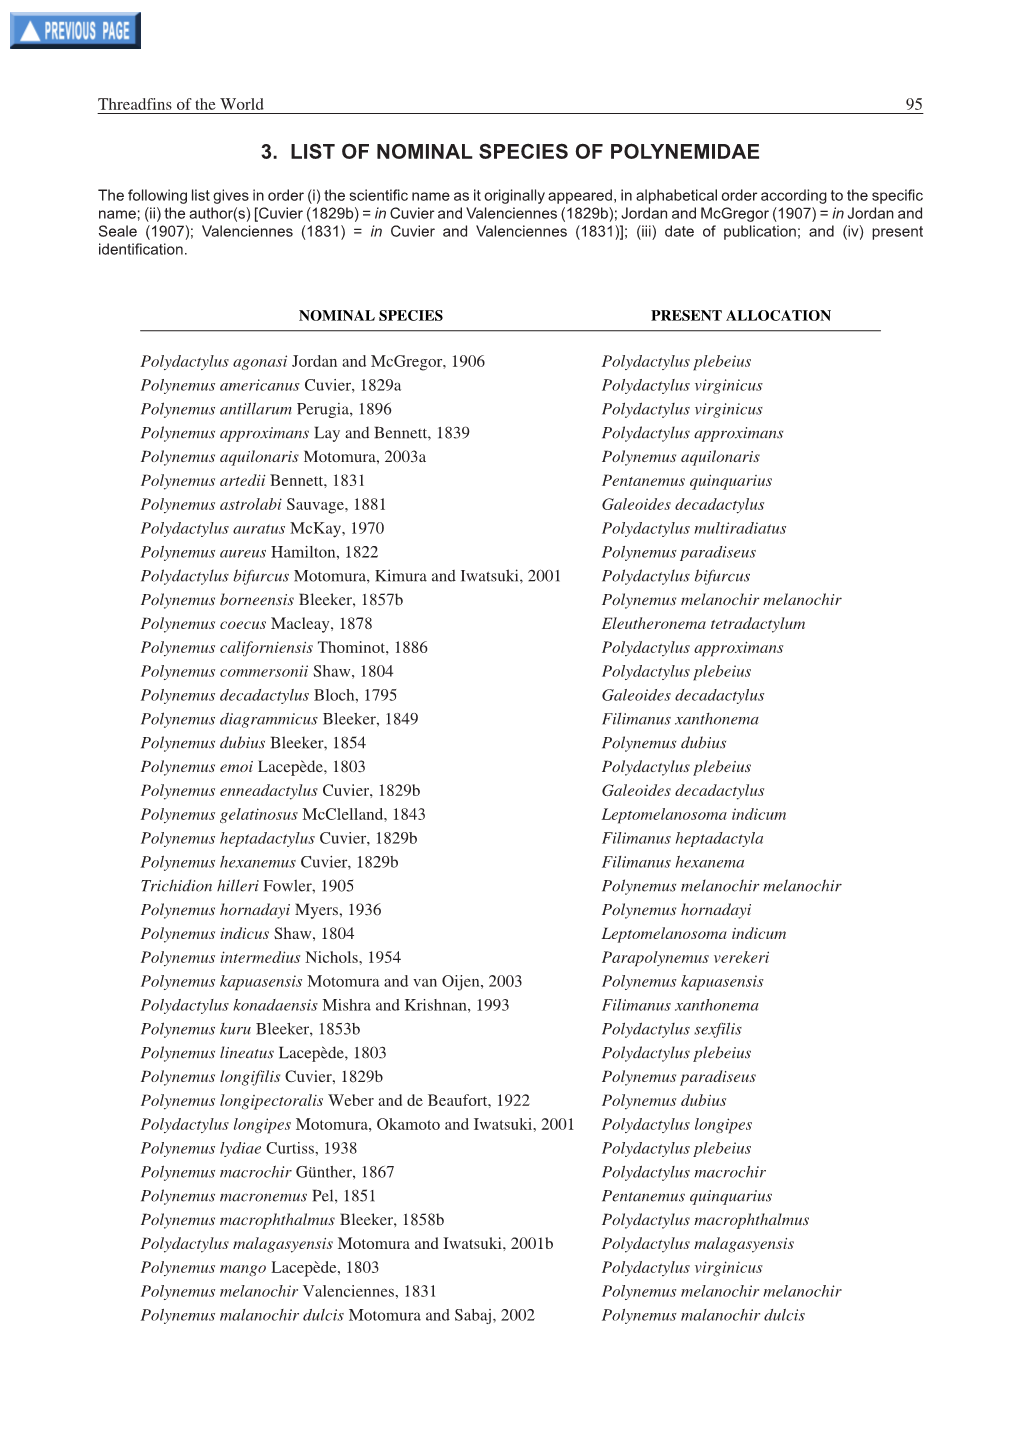 3. List of Nominal Species of Polynemidae